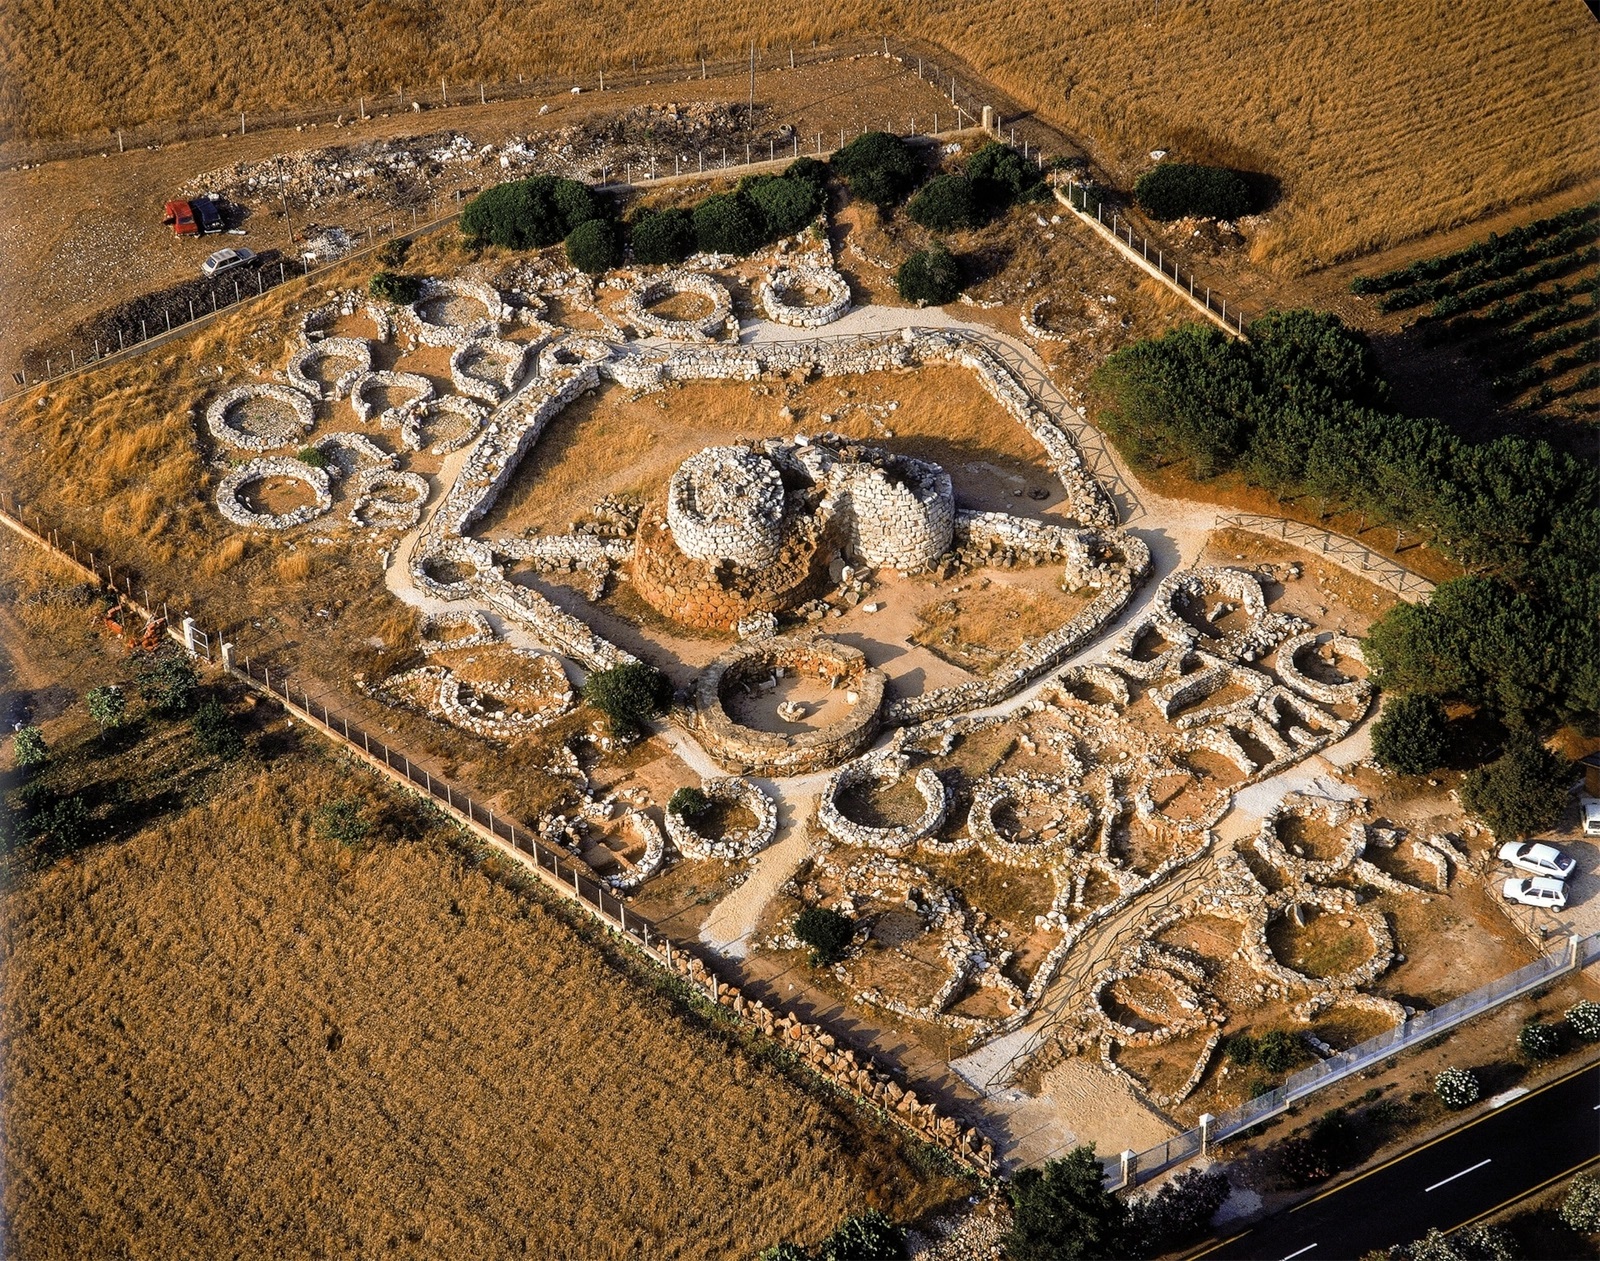 Le nuraghe de Palmavera (15e à 9e siècle av. J.-C.) est un exemple caractéristique des structures mégalithiques érigées par le peuple nuragique en Sardaigne à l’âge du bronze tardif.